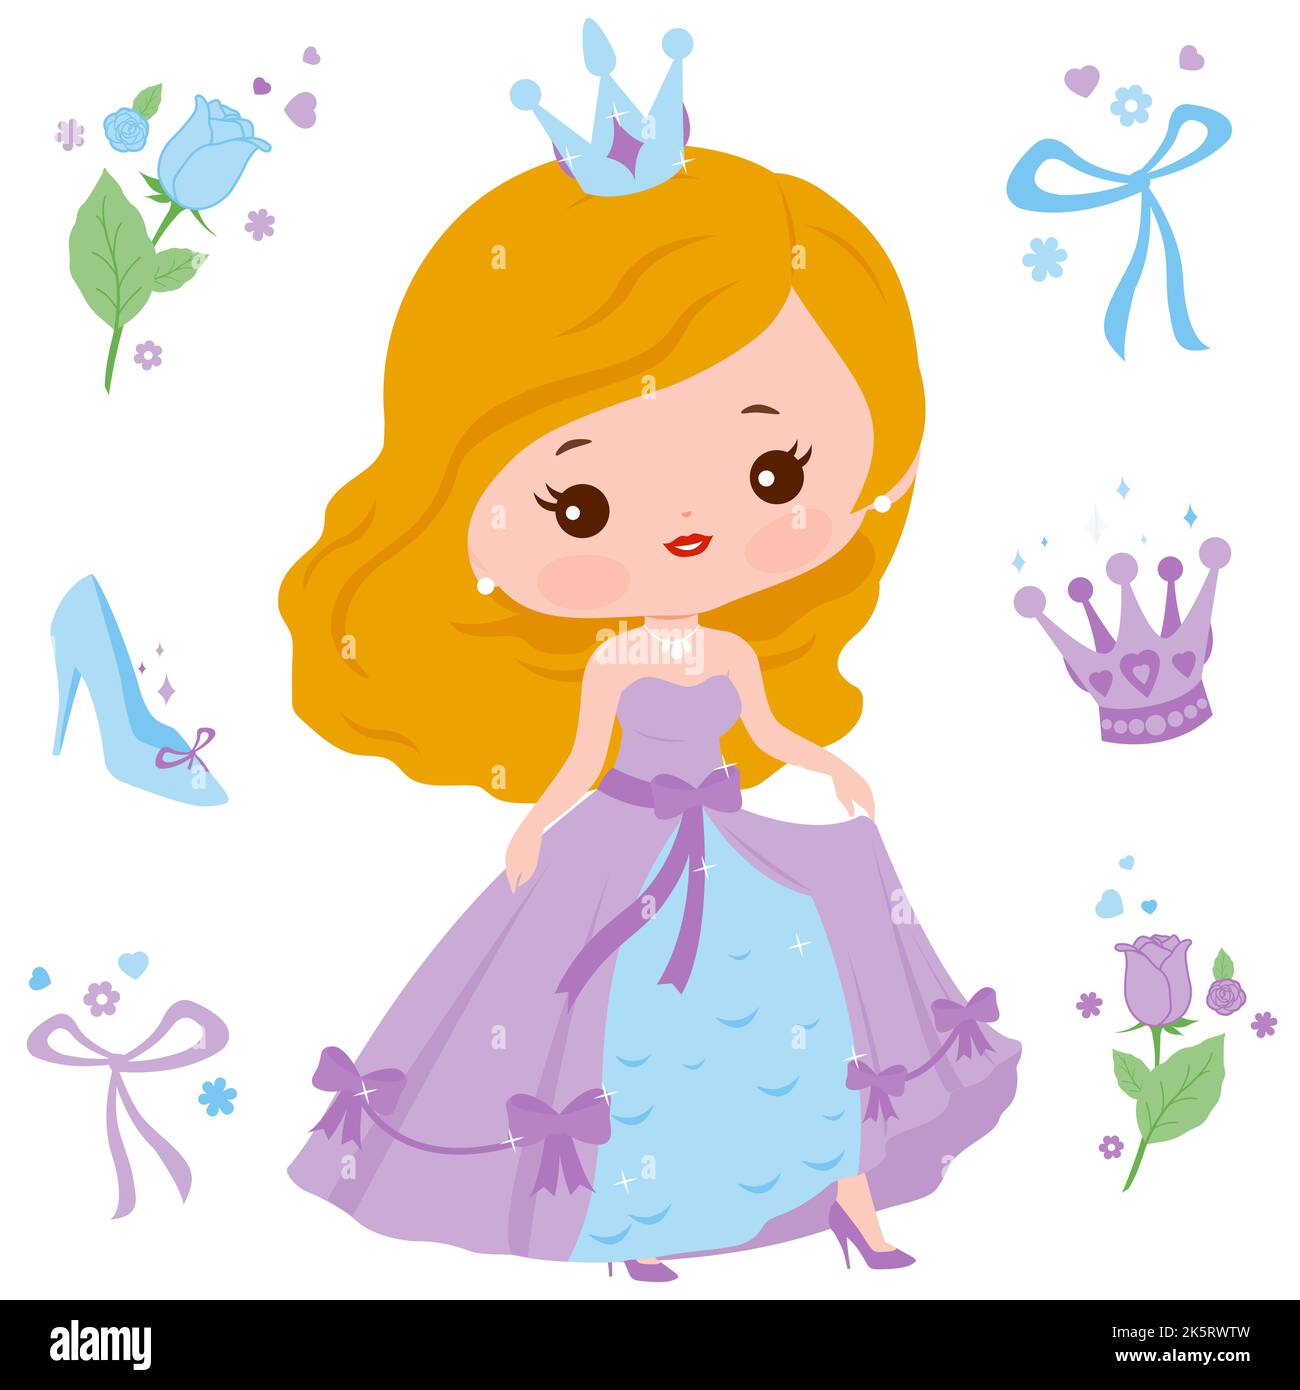 Belle princesse avec une jolie robe. Jeu d'illustrations Banque D'Images